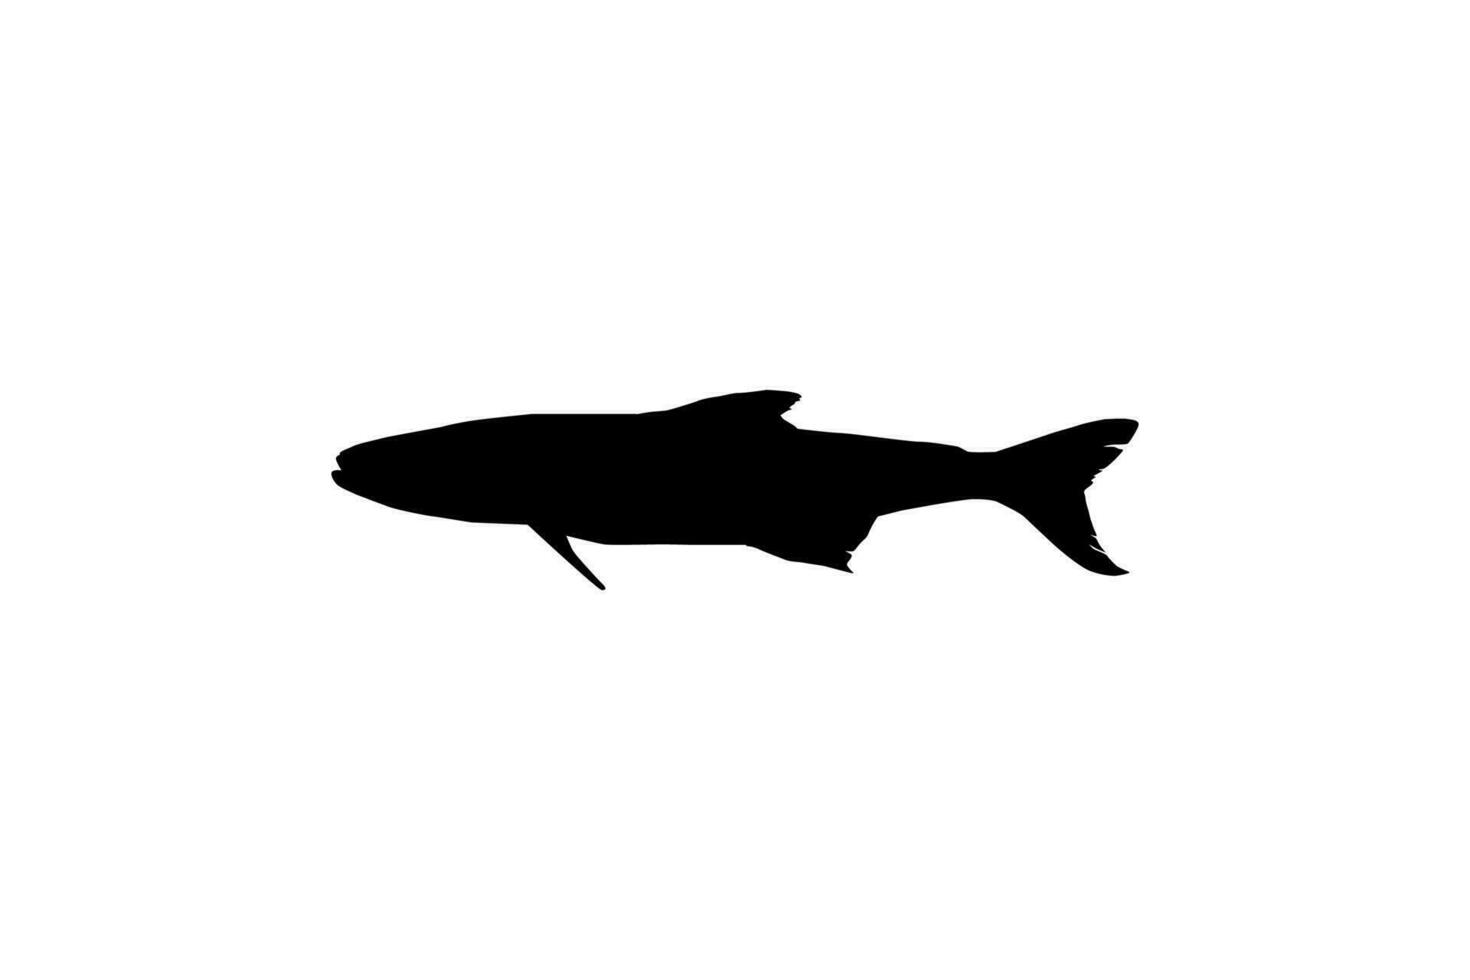 cobia poisson silhouette, aussi connu comme noir carangue, noir saumon, lingue, poisson-citron, crabier, prodigue fils, morue, et noir bonite. vecteur illustration